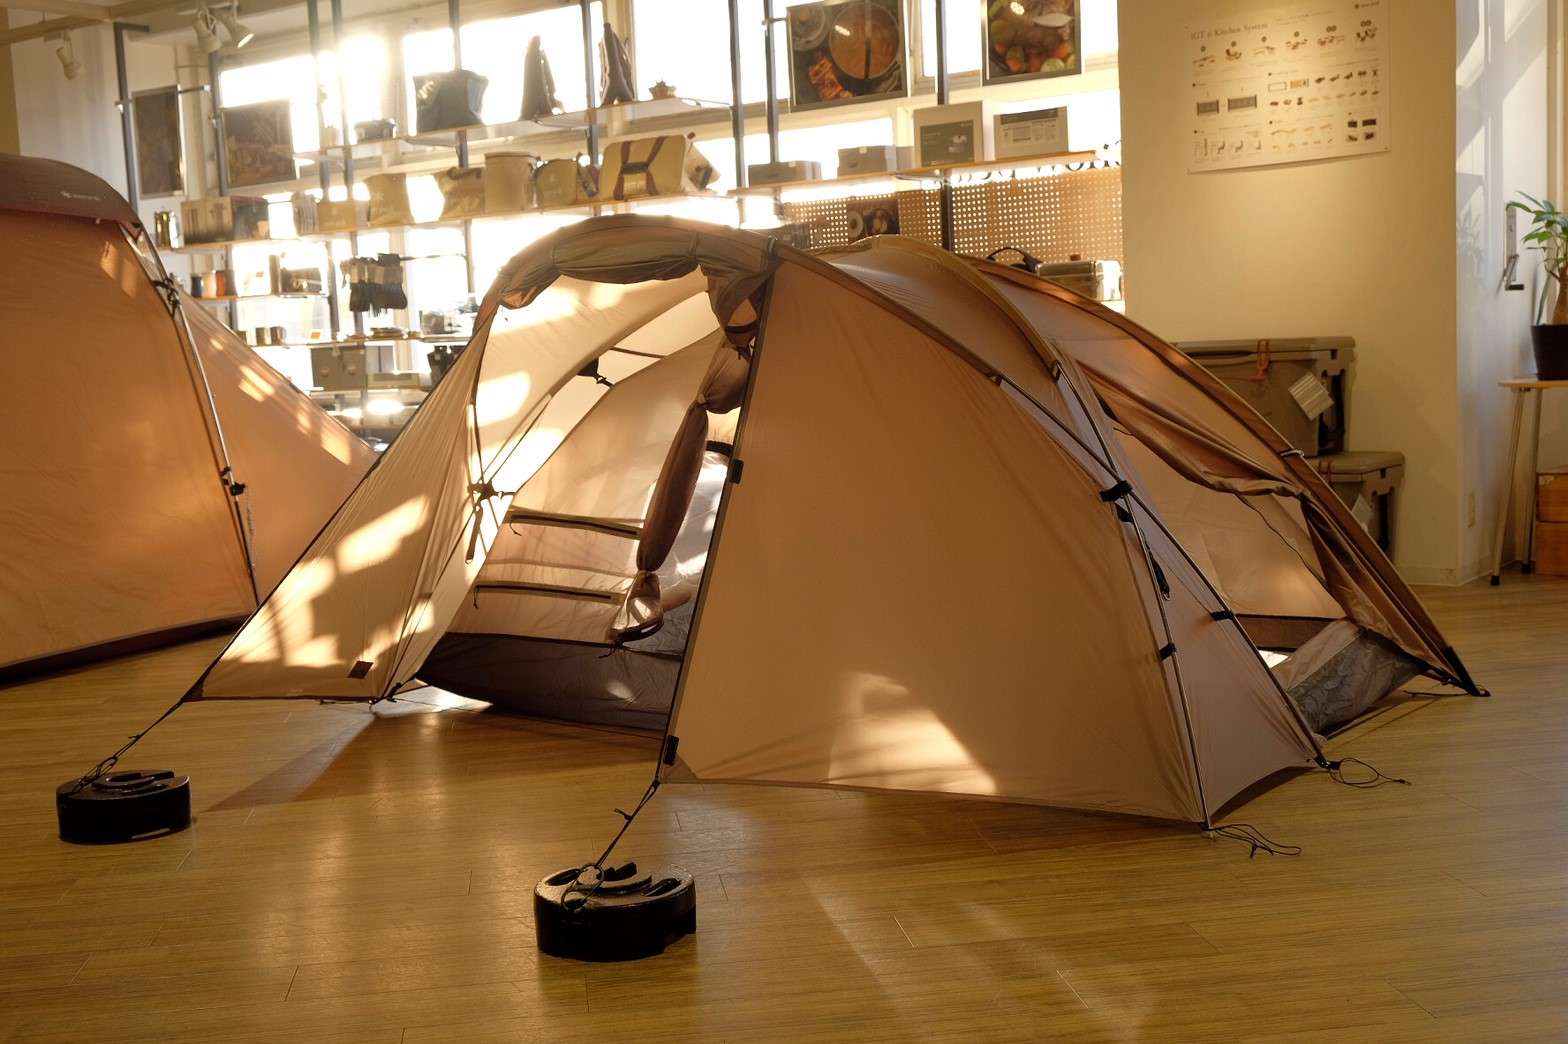 うーん、これは欲しい！と思わず声にでてしまうソロキャンプ向け テントが2020年新商品で登場！  ミニッツドーム　Pro.air 1